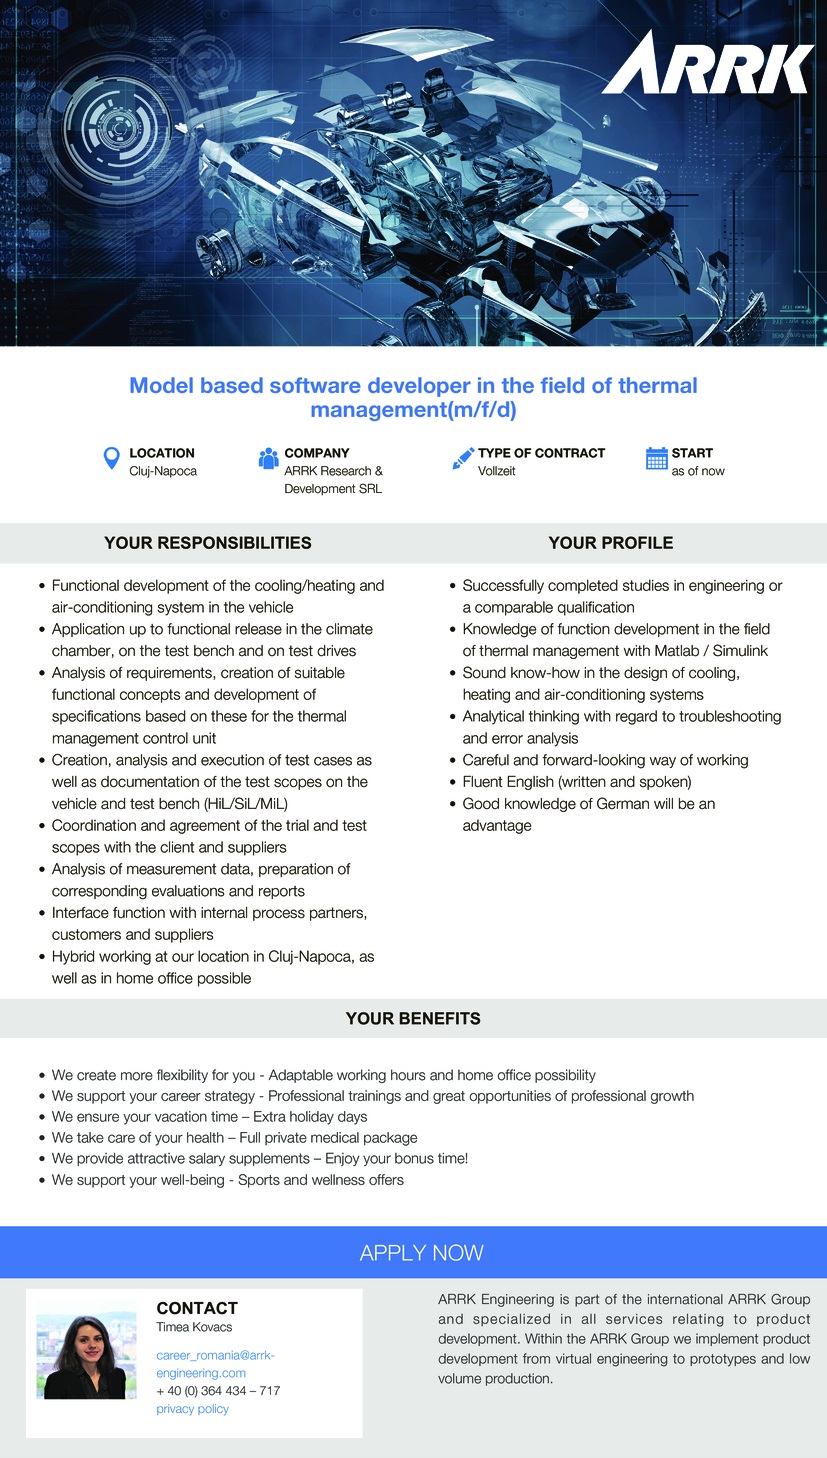 Model based software developer - thermal management